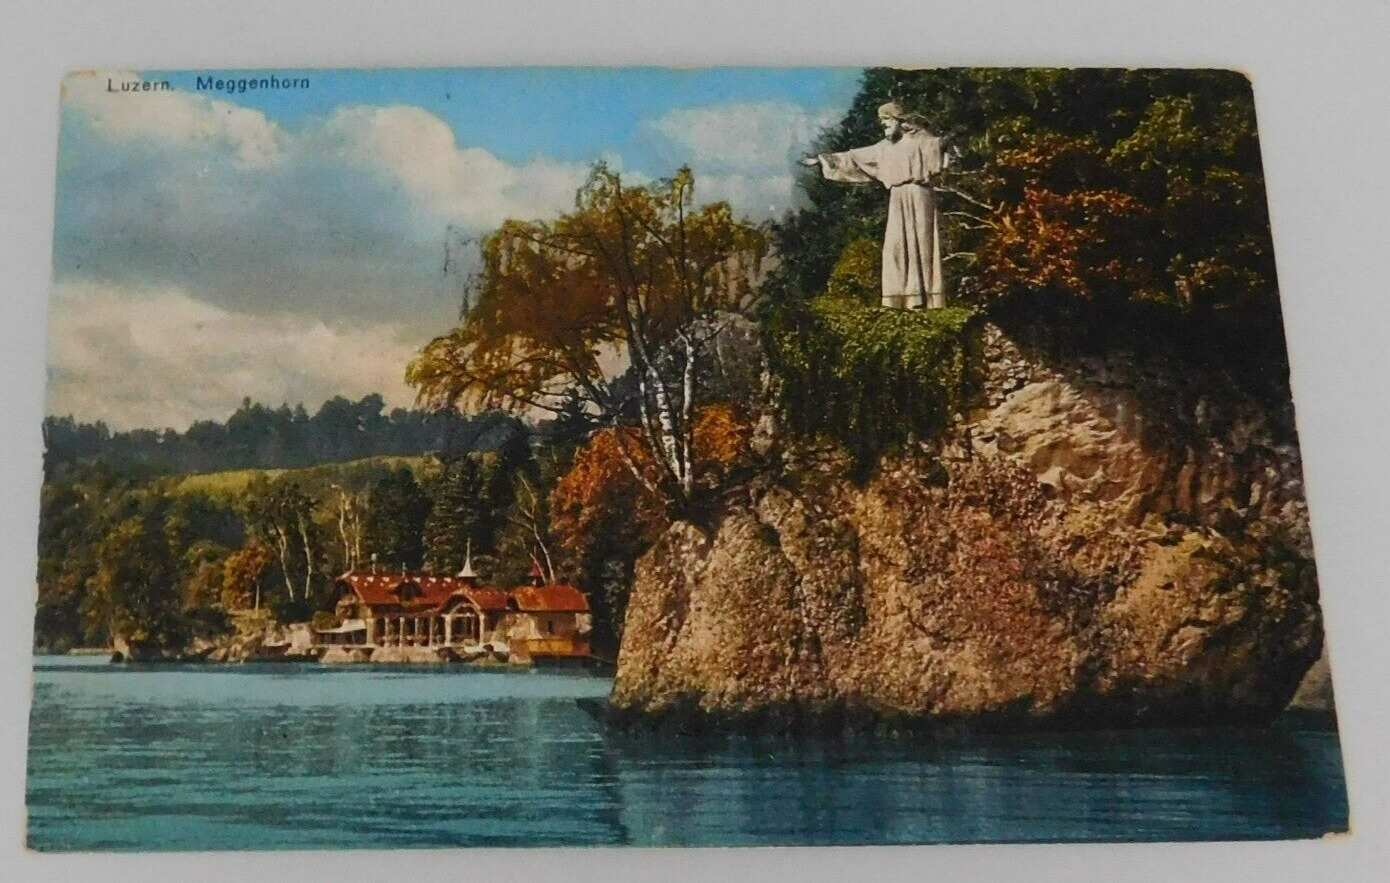 Luzern Meggenhorn  Switzerland Religious Statue  Vintage Postcard